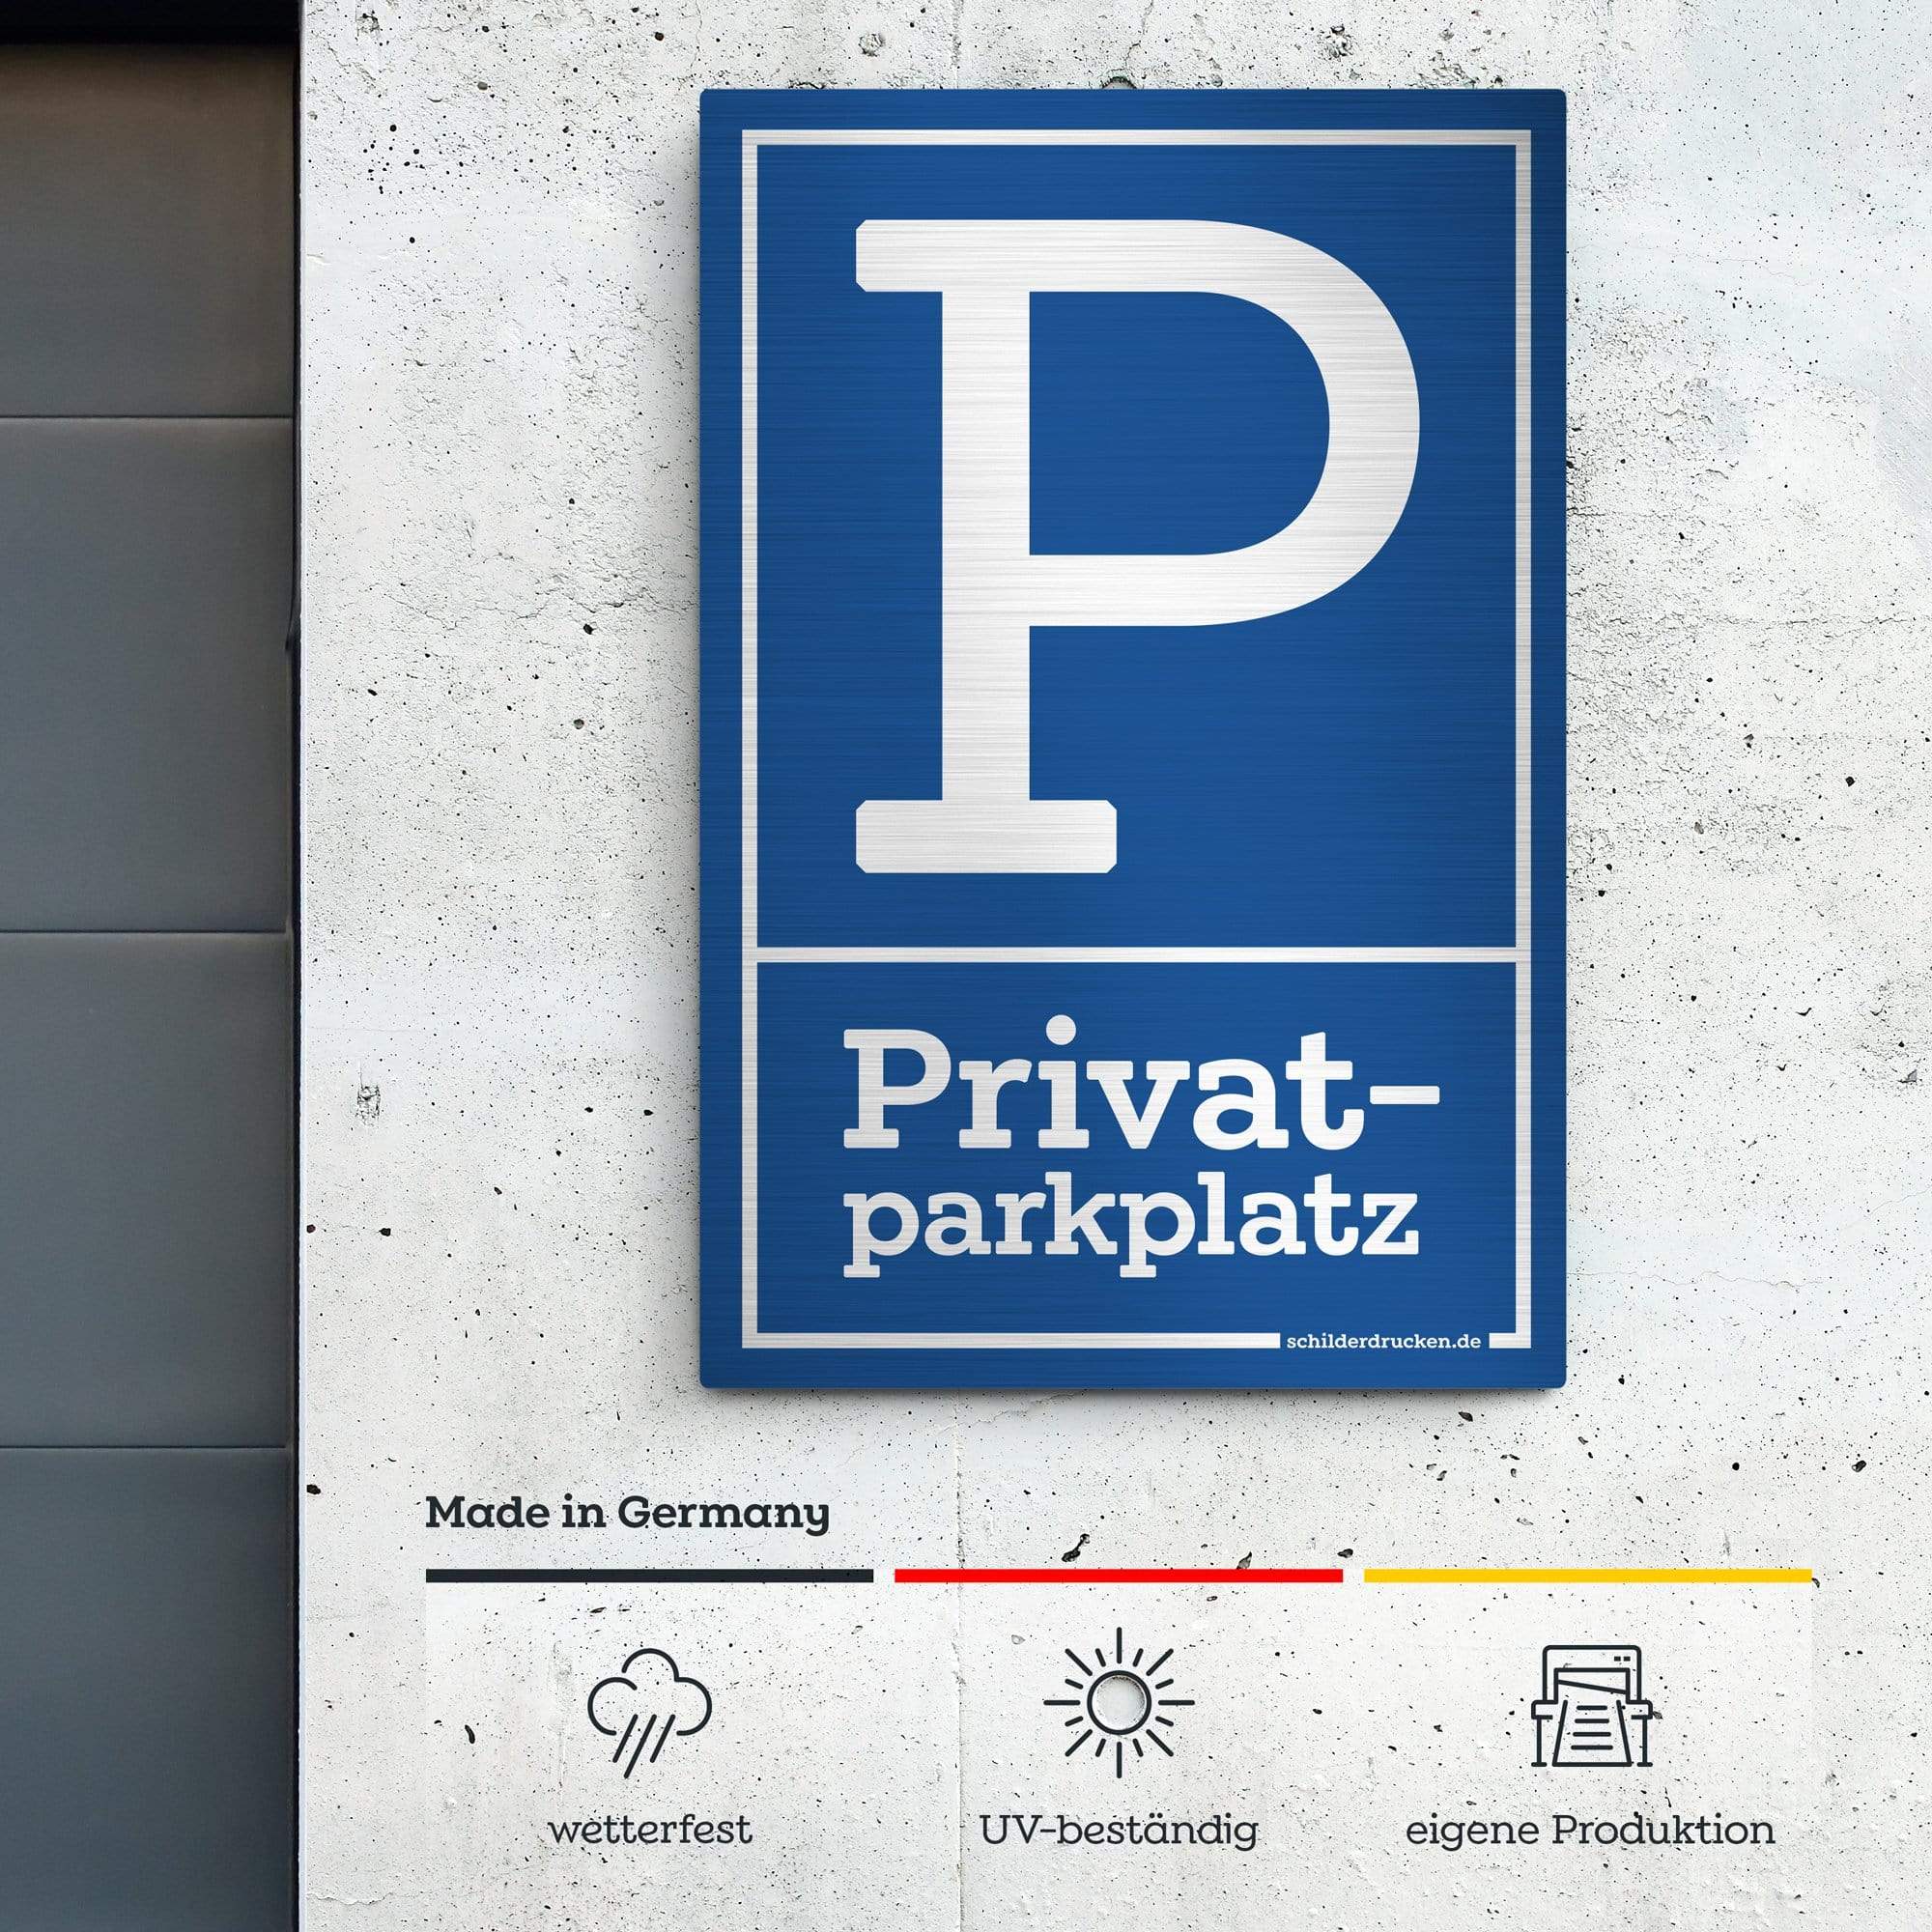 Privatparkplatz 10 x 15 cm / silber gebürstet / Alu-Dibond online drucken lassen bei schilderdrucken.de